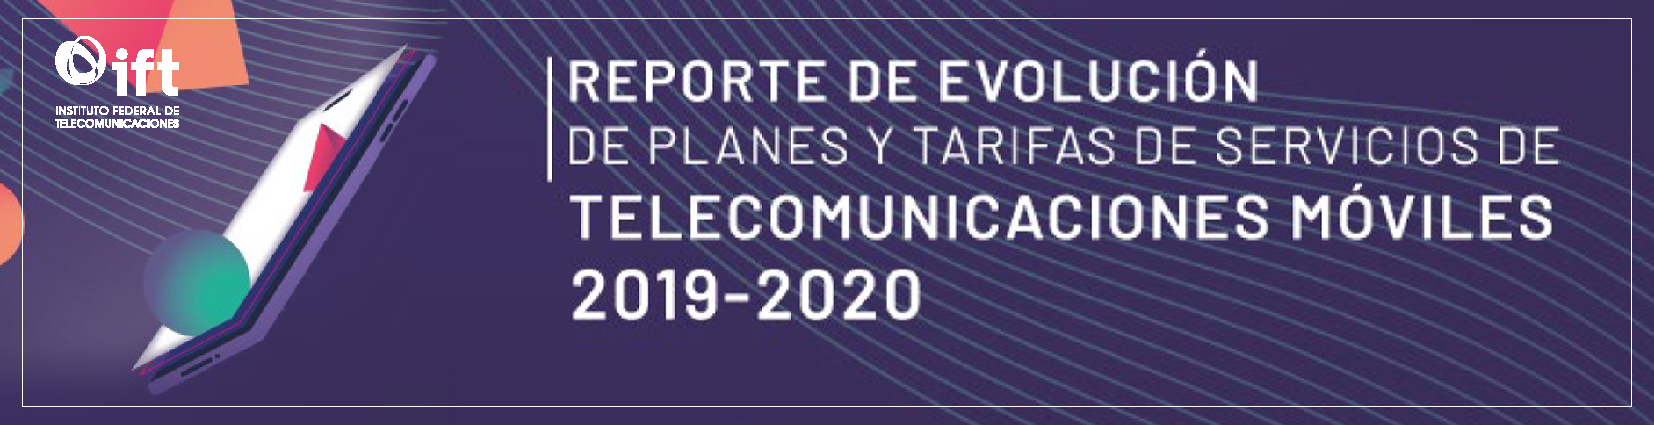 Reporte de Evolución de Planes y Tarifas de Servicios de Telecomunicaciones Móviles, 2019-2020